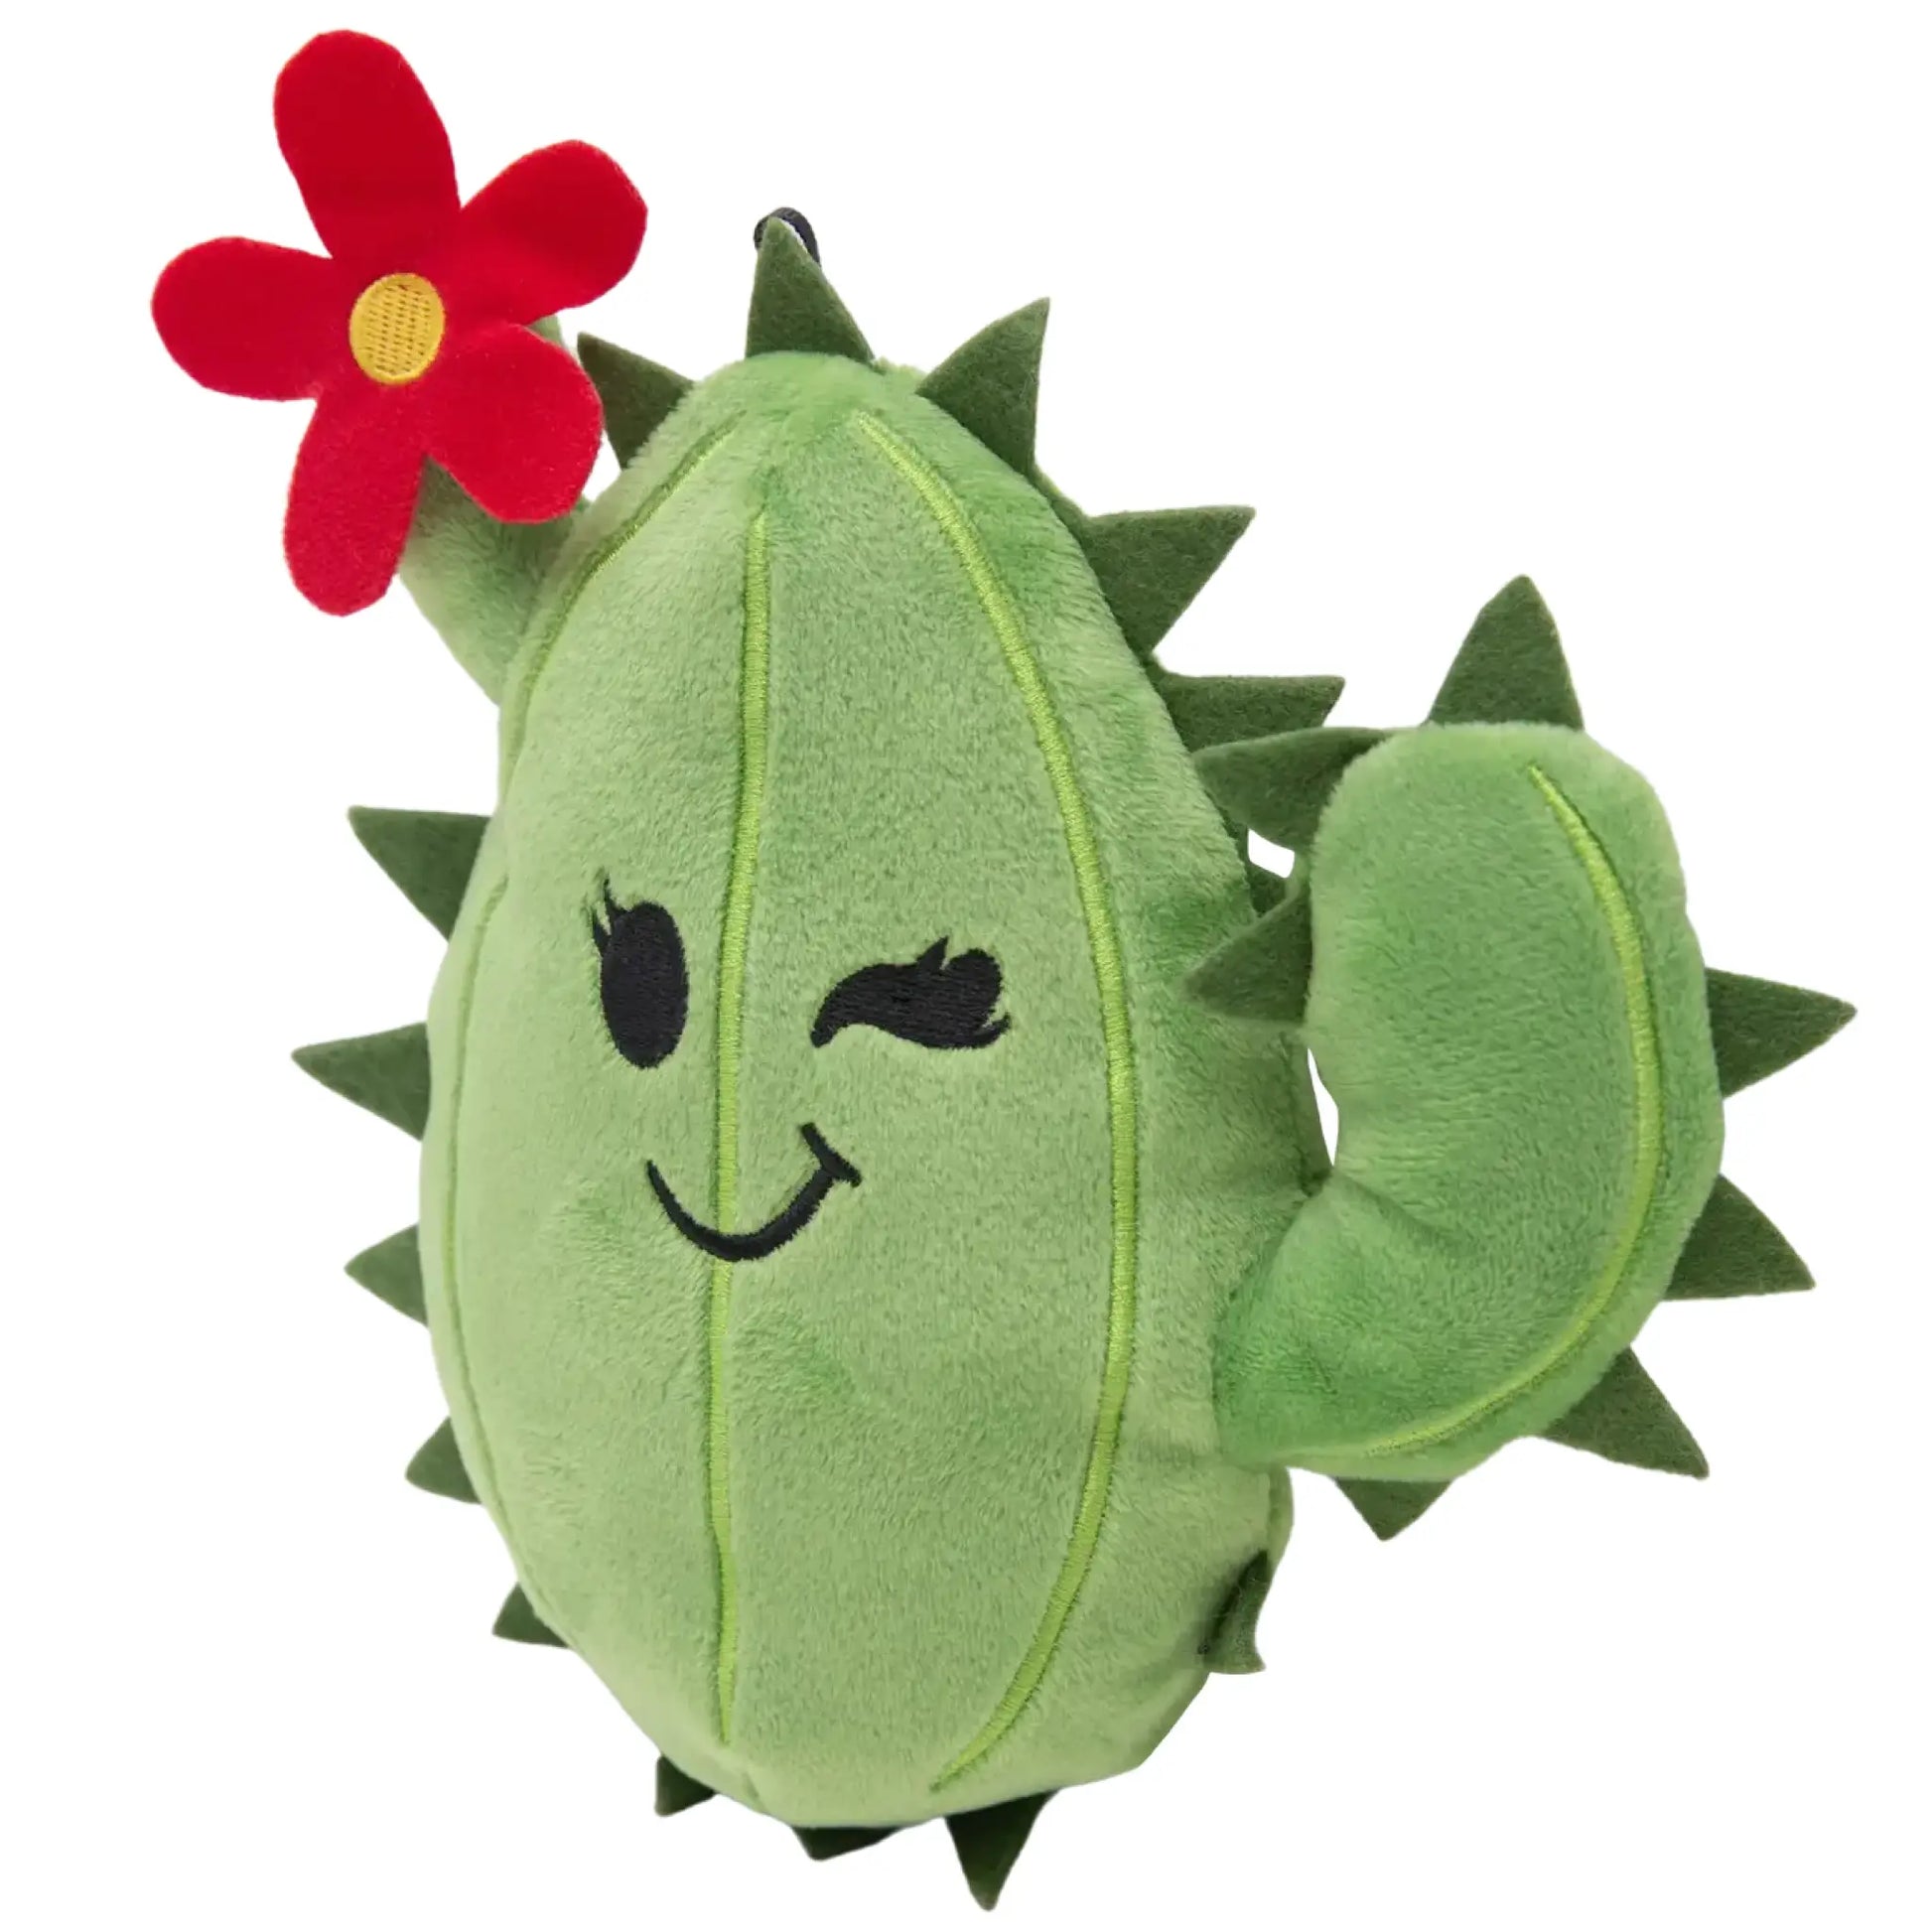 Chloe the Cactus dog toy - Art